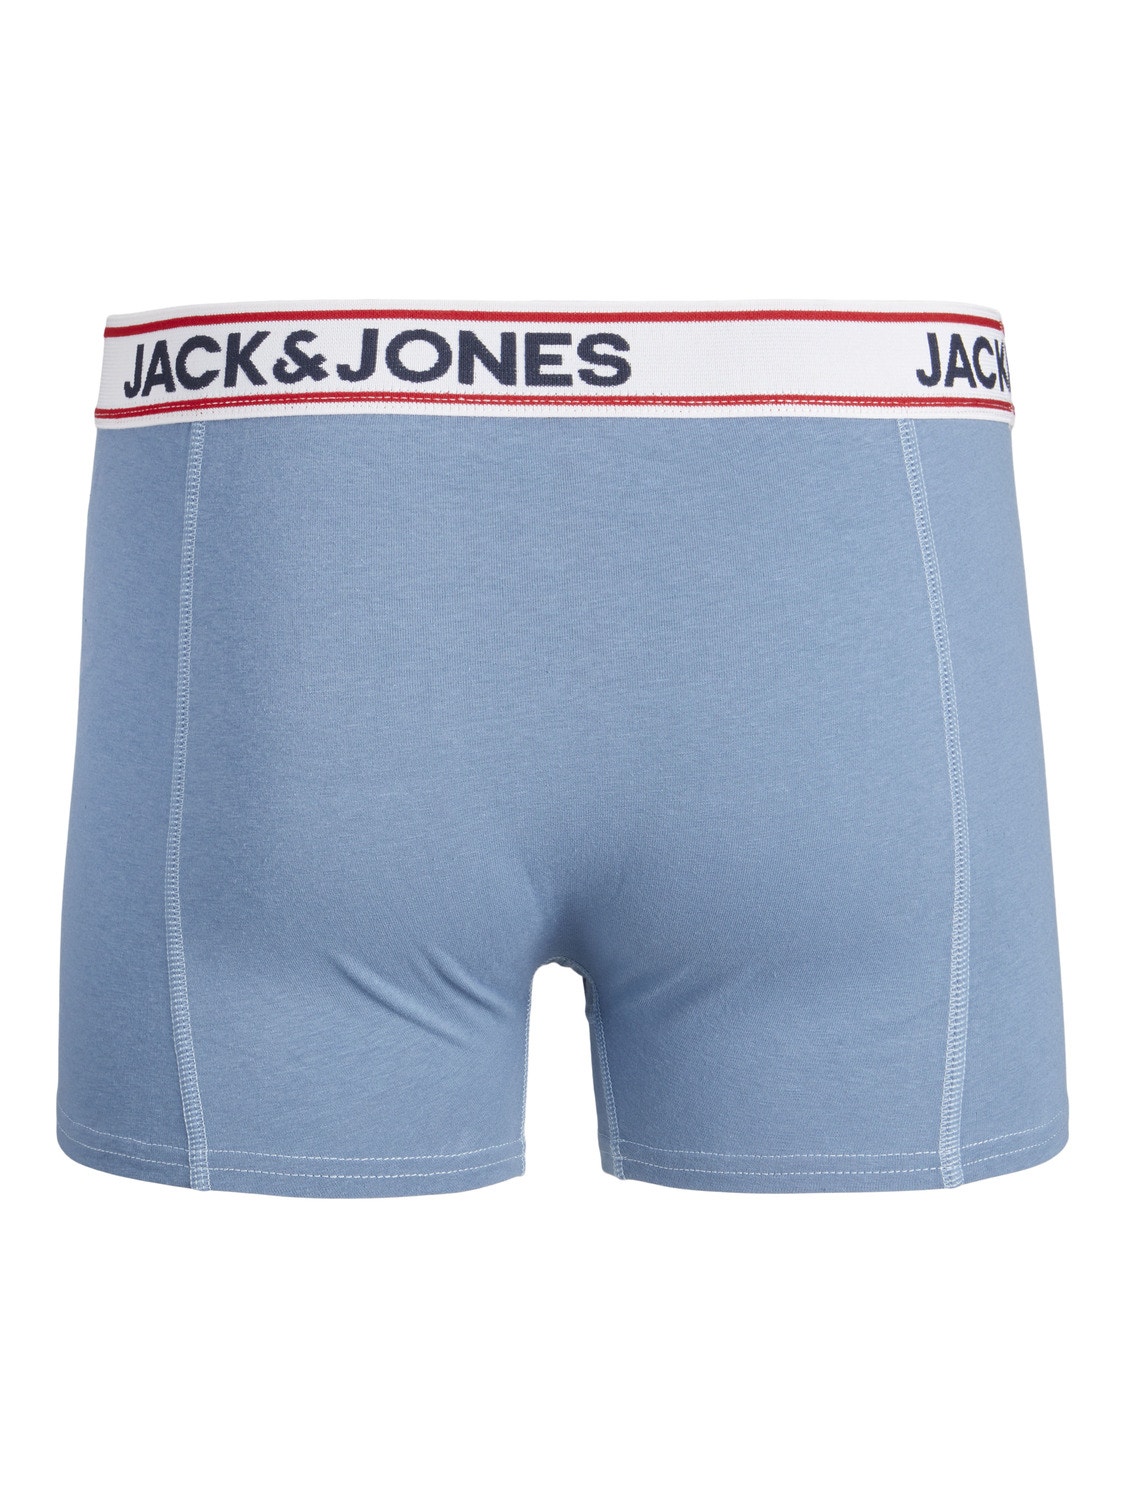 Jack & Jones Pack de 3 Boxers -Navy Blazer - 12236291